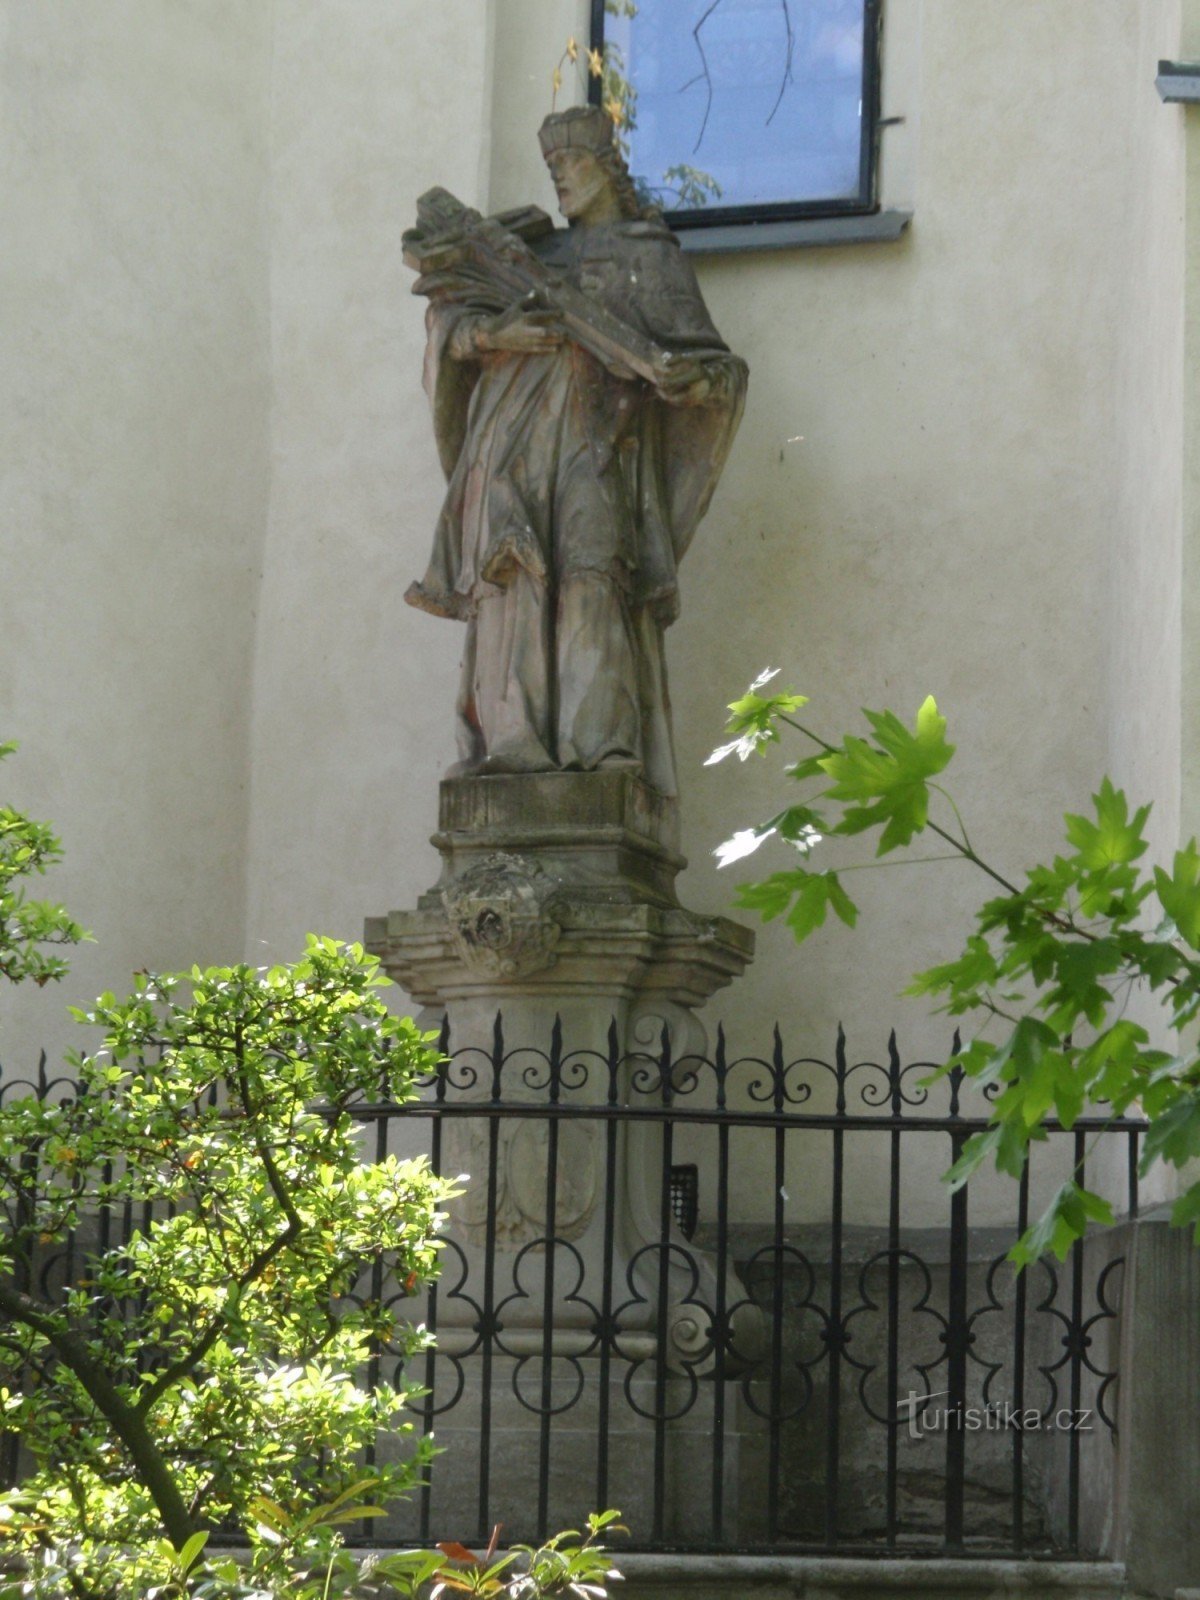 Città Nuova in Moravia - statua di S. Jan Nepomucký